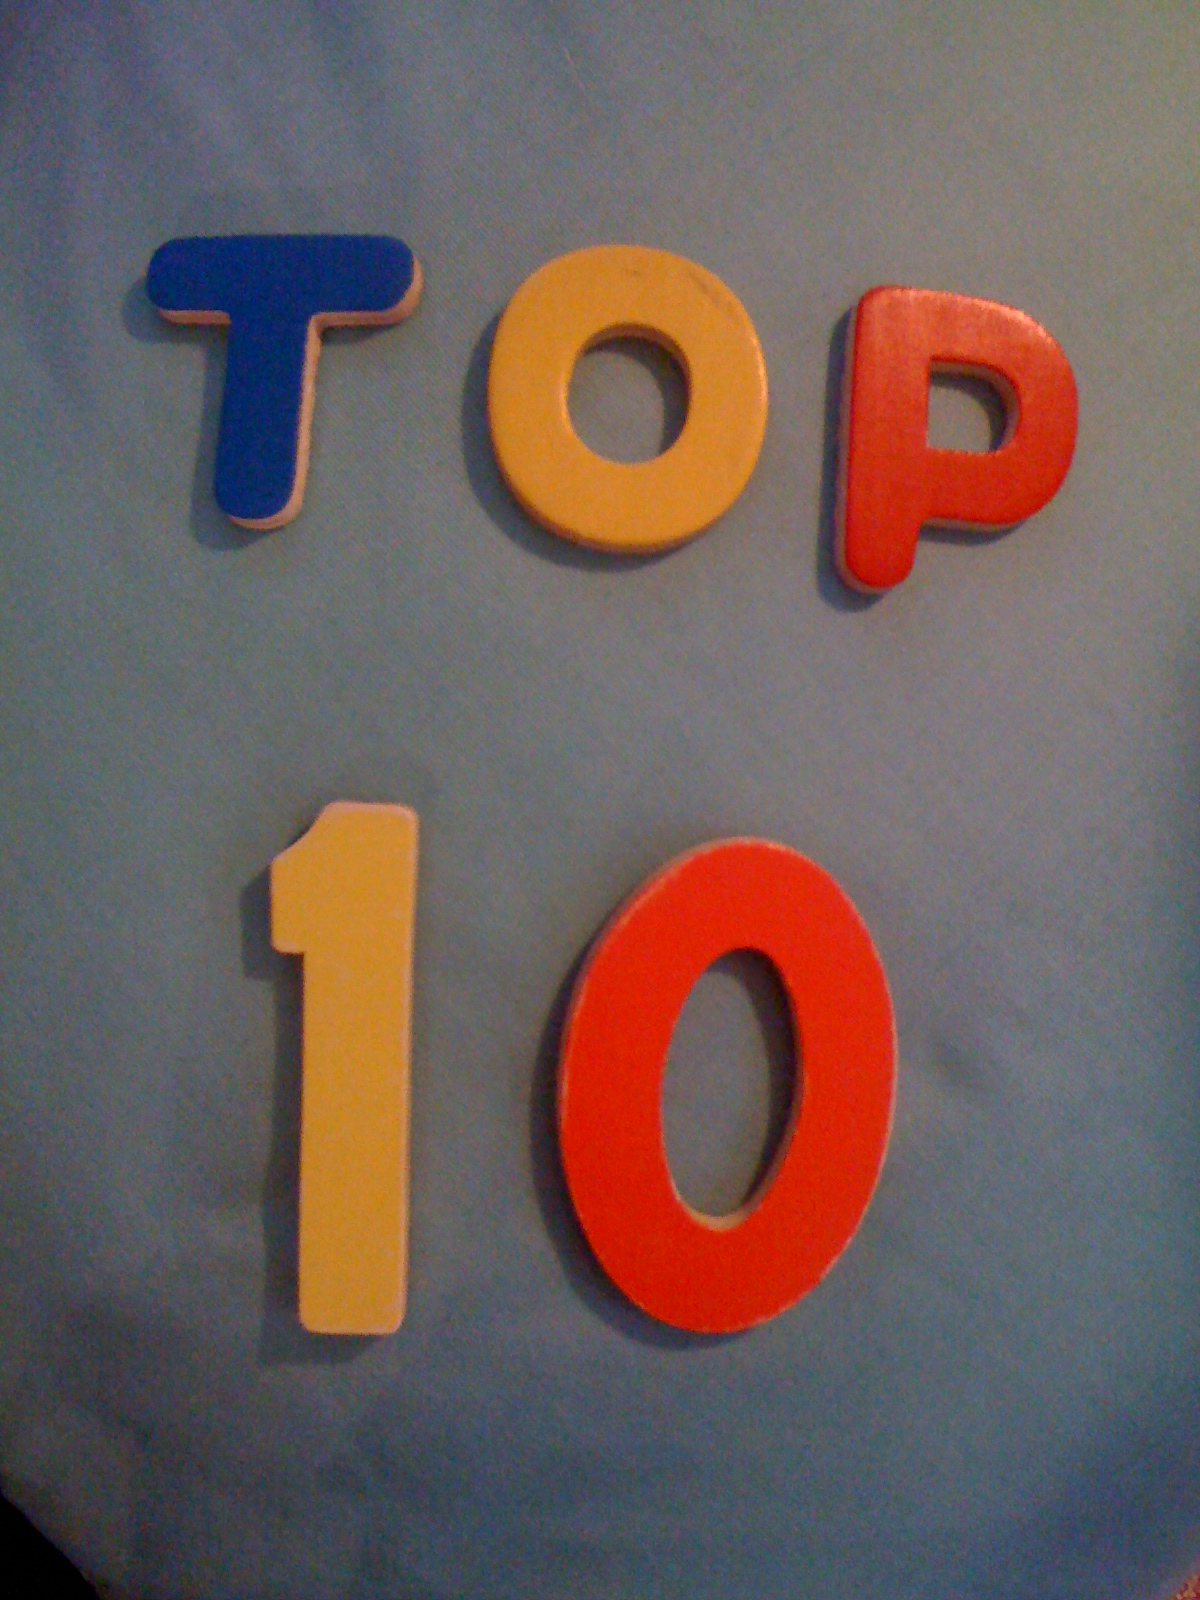 top-10 (2)